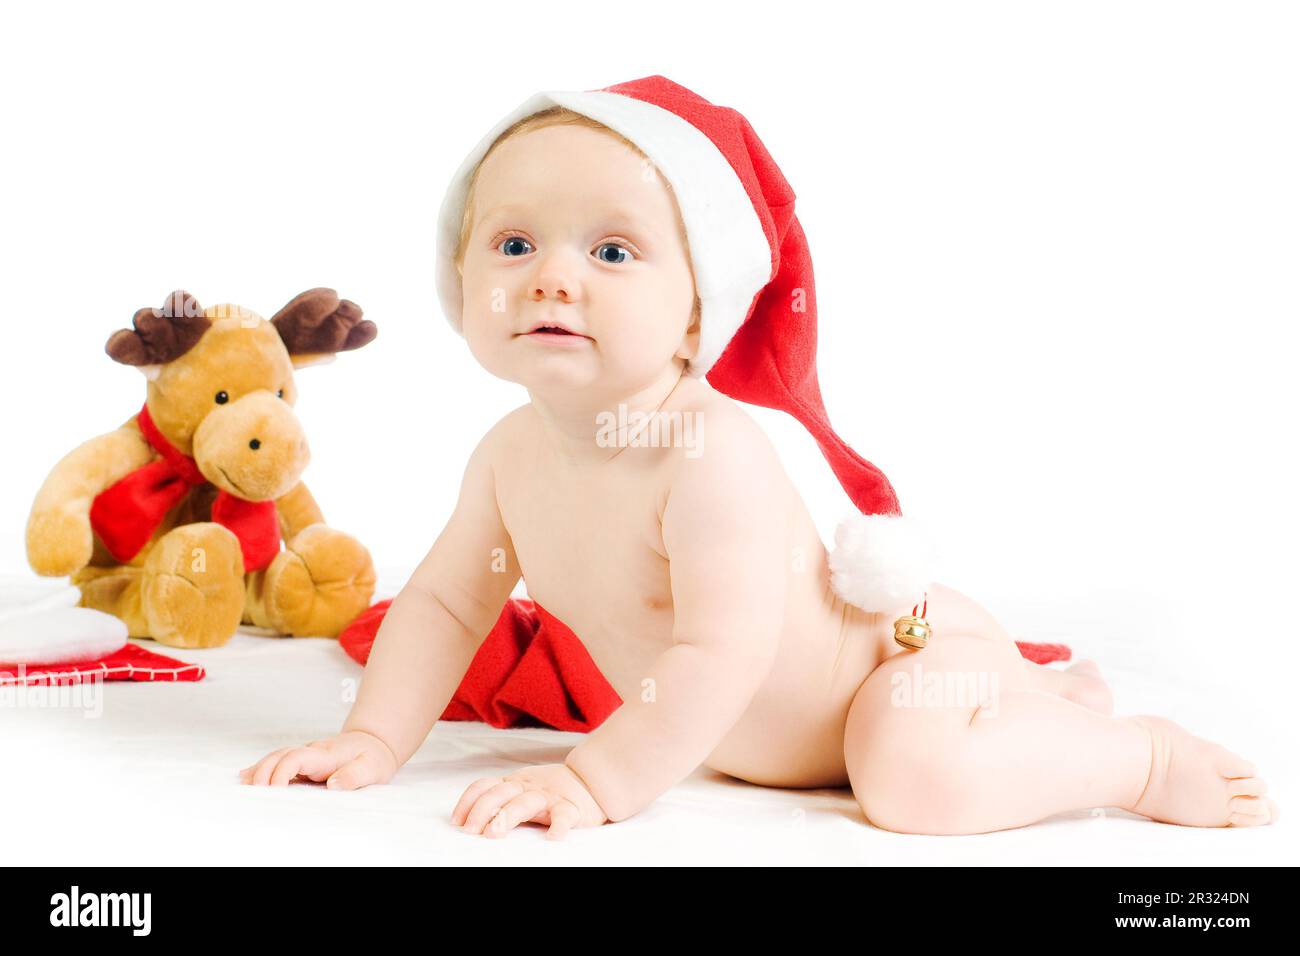 süßes baby mit weihnachtsmütze und elch auf weißem grund Stock Photo